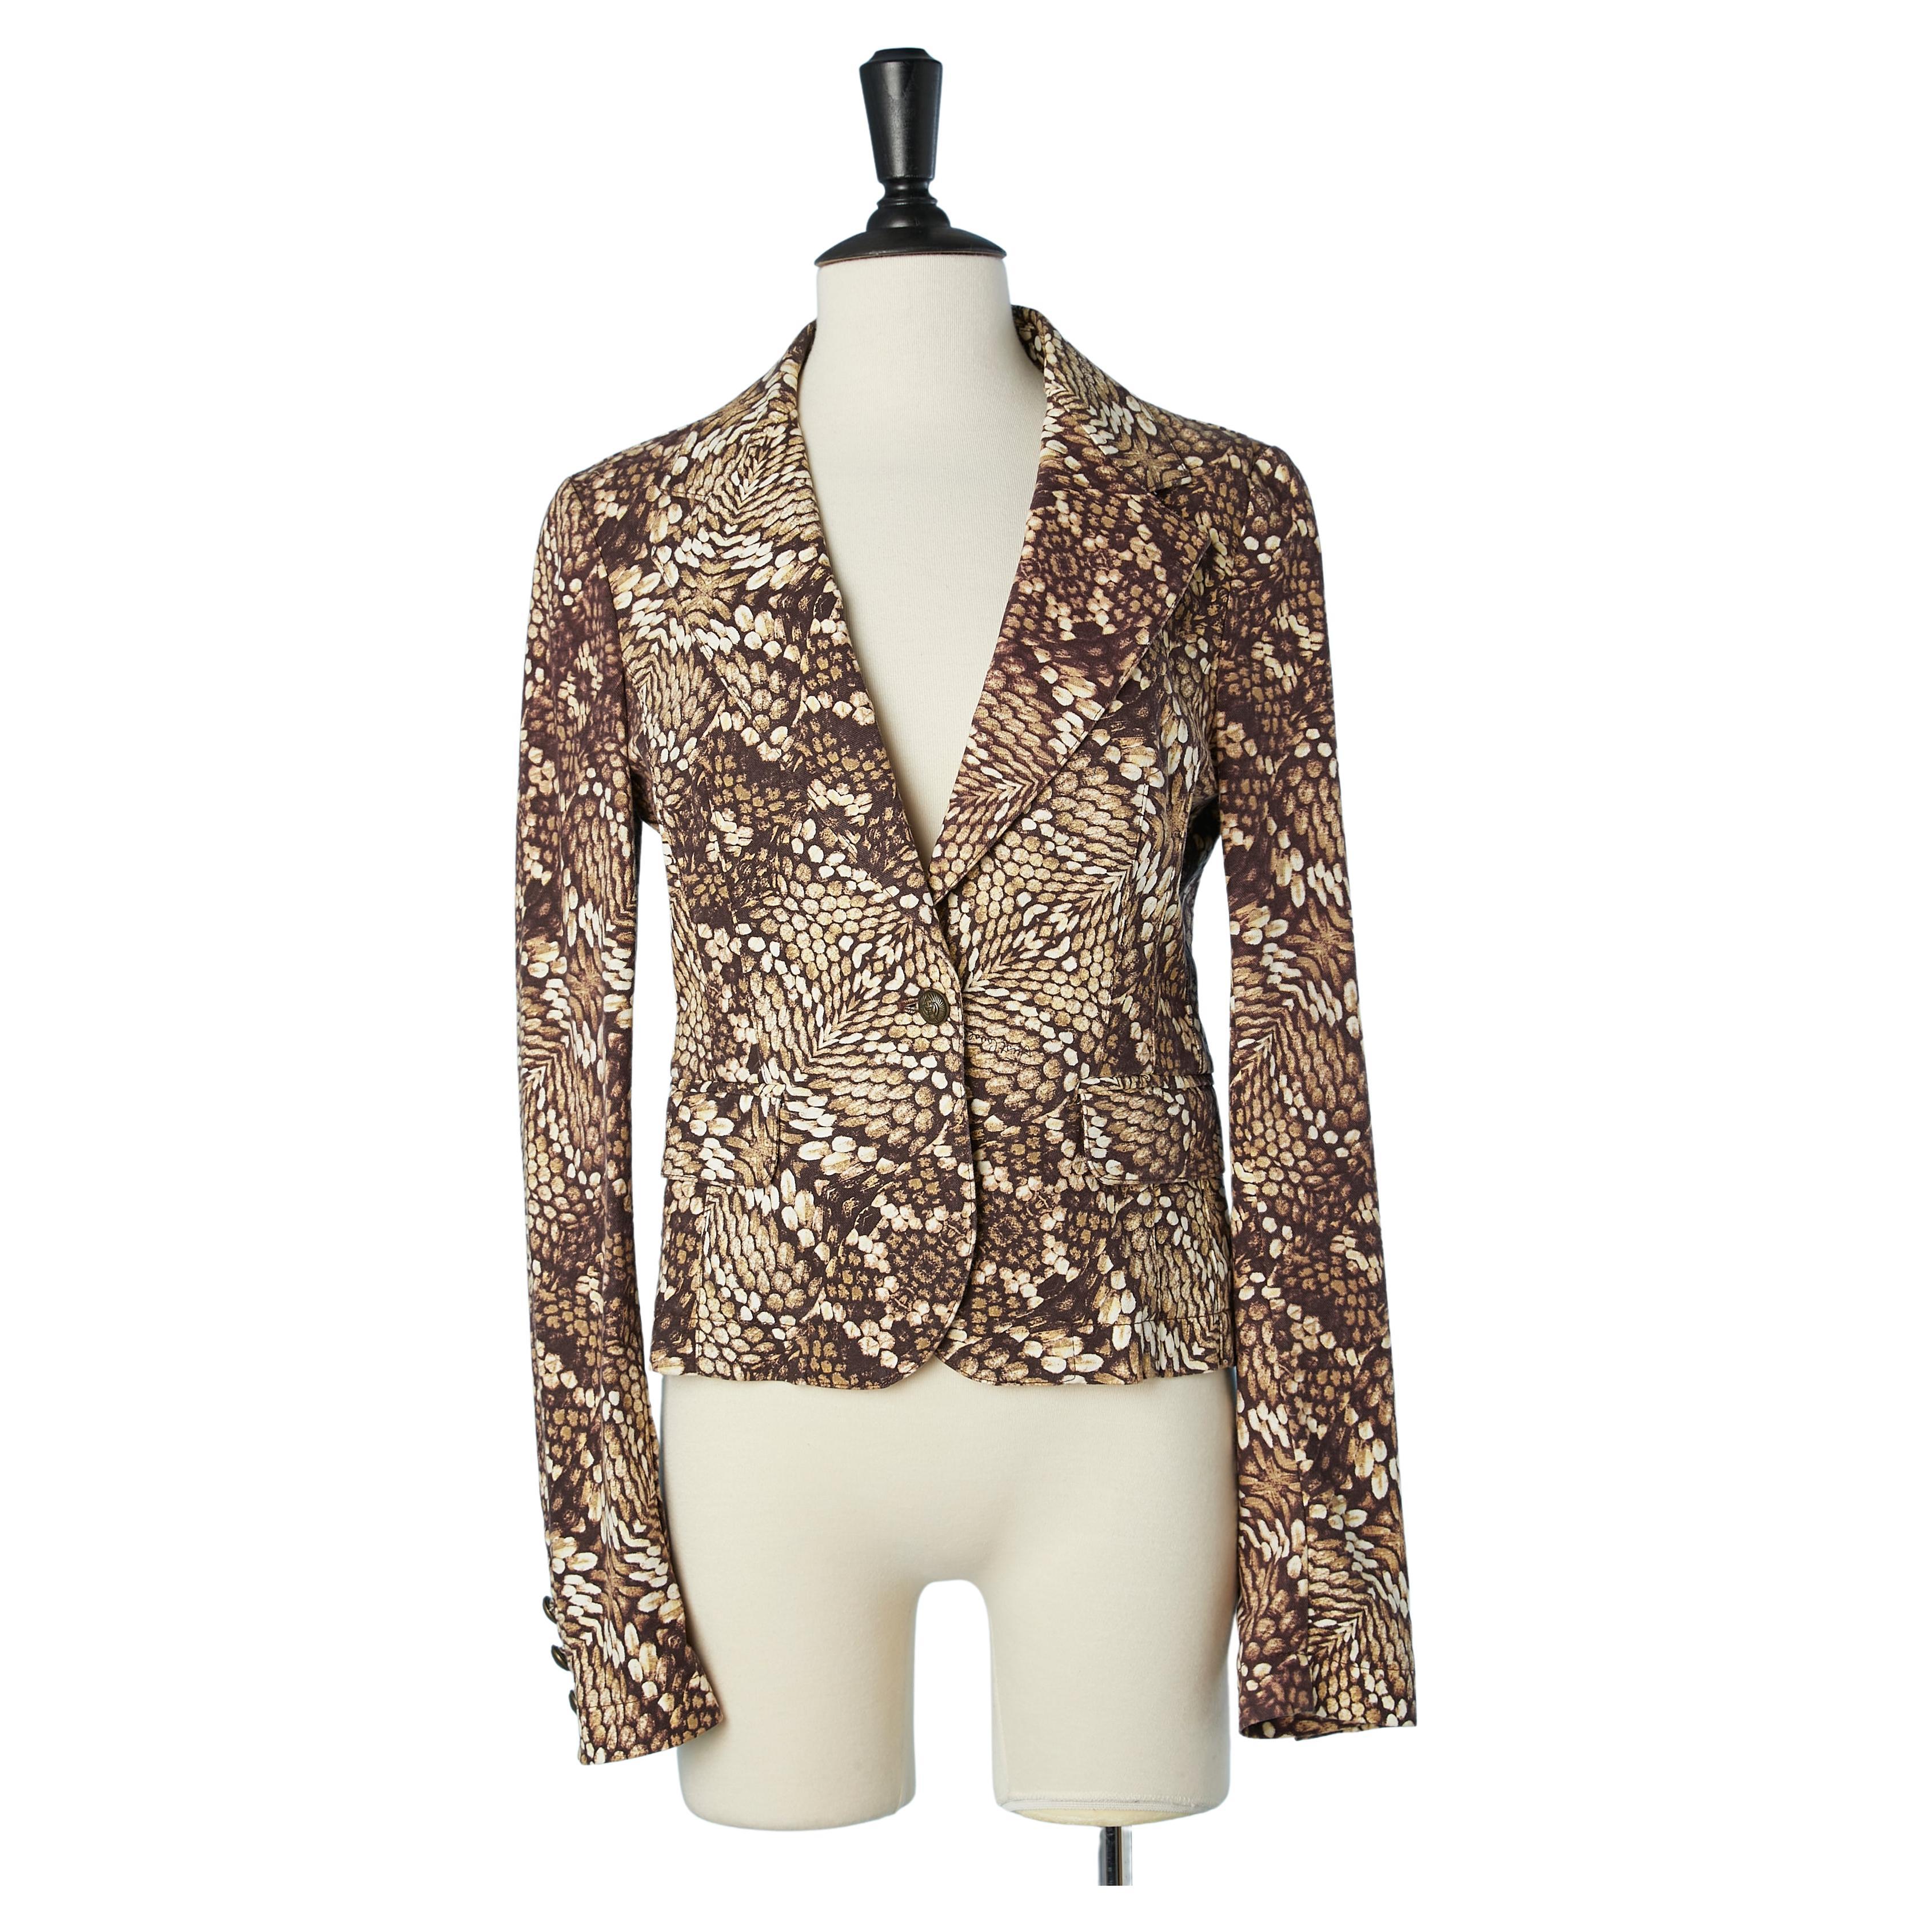 Printed single-breasted cotton jacket Just Cavalli Roberto Cavalli 